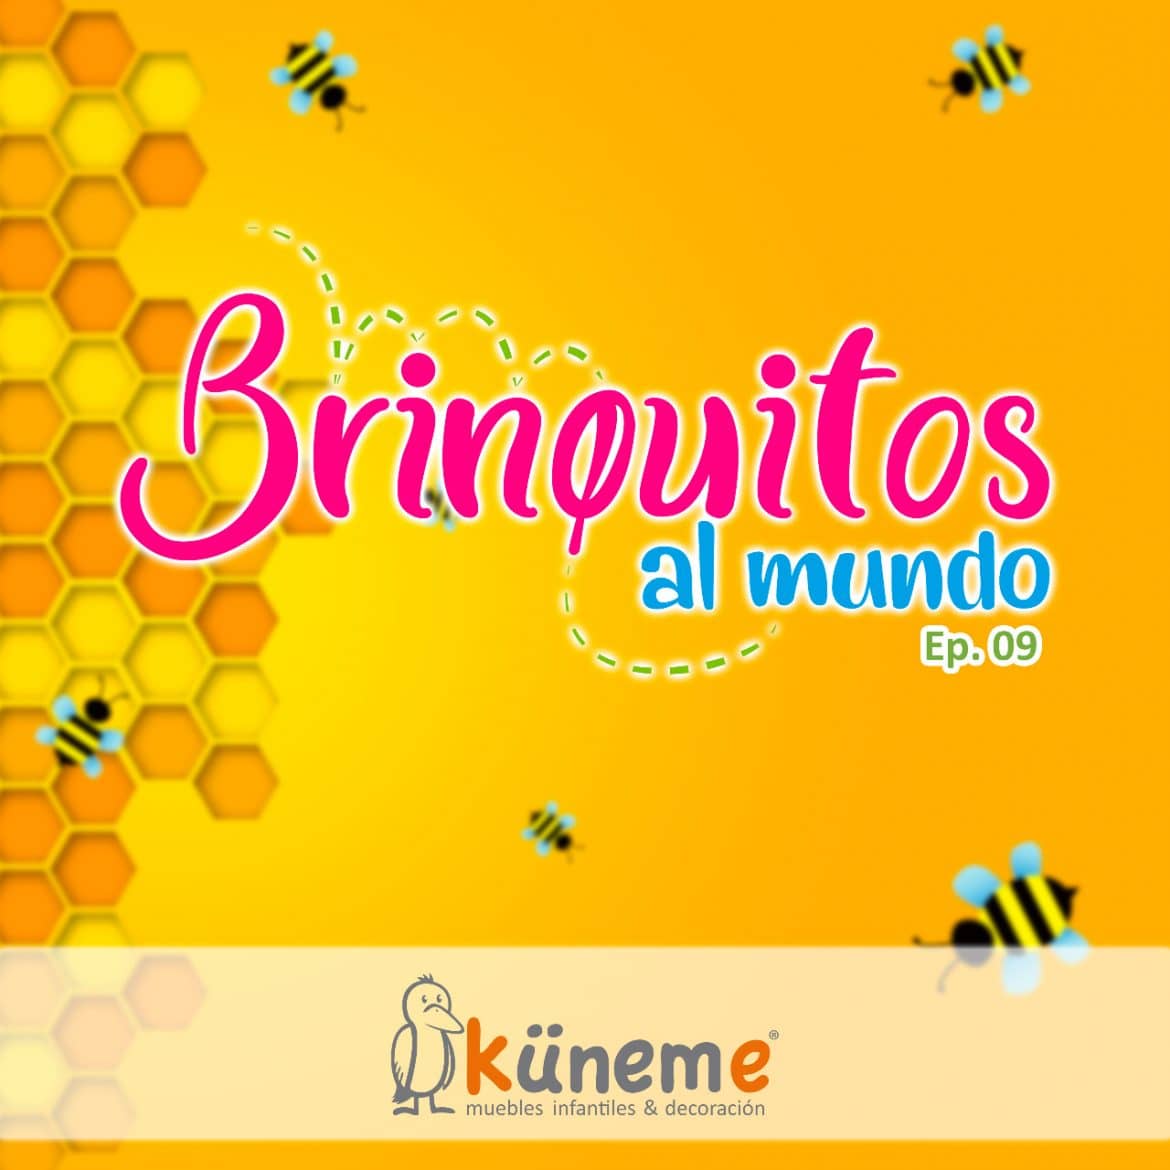 Küneme: Brinquitos Al Mundo EP09